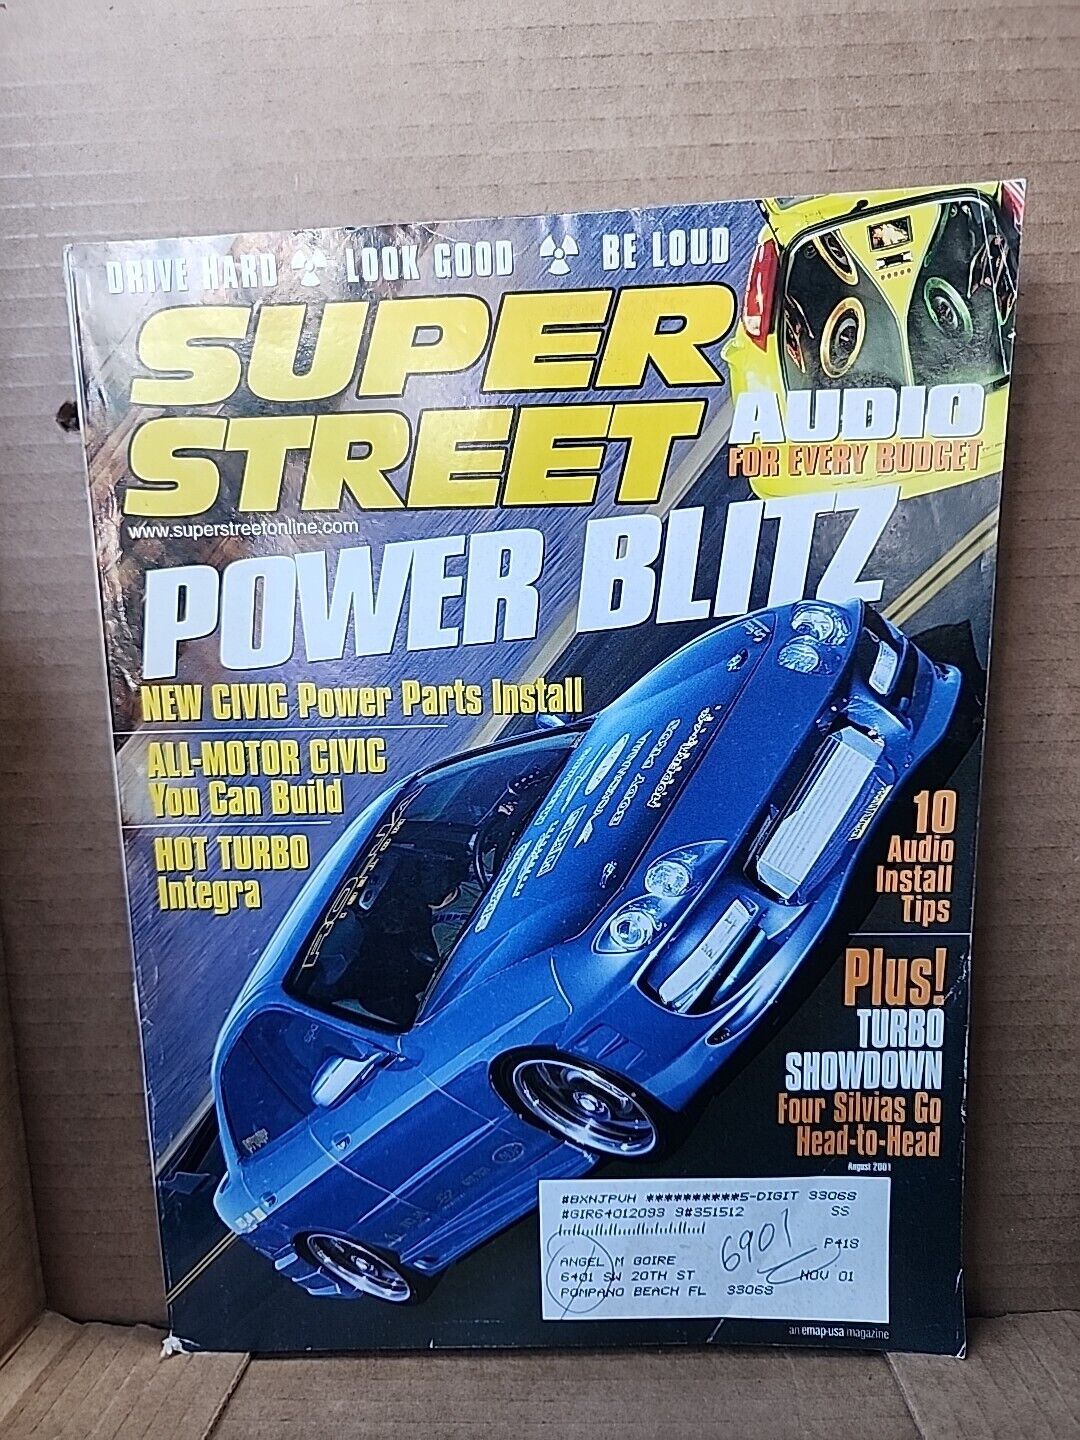 Super Street Magazine - August 2001 Power Blitz